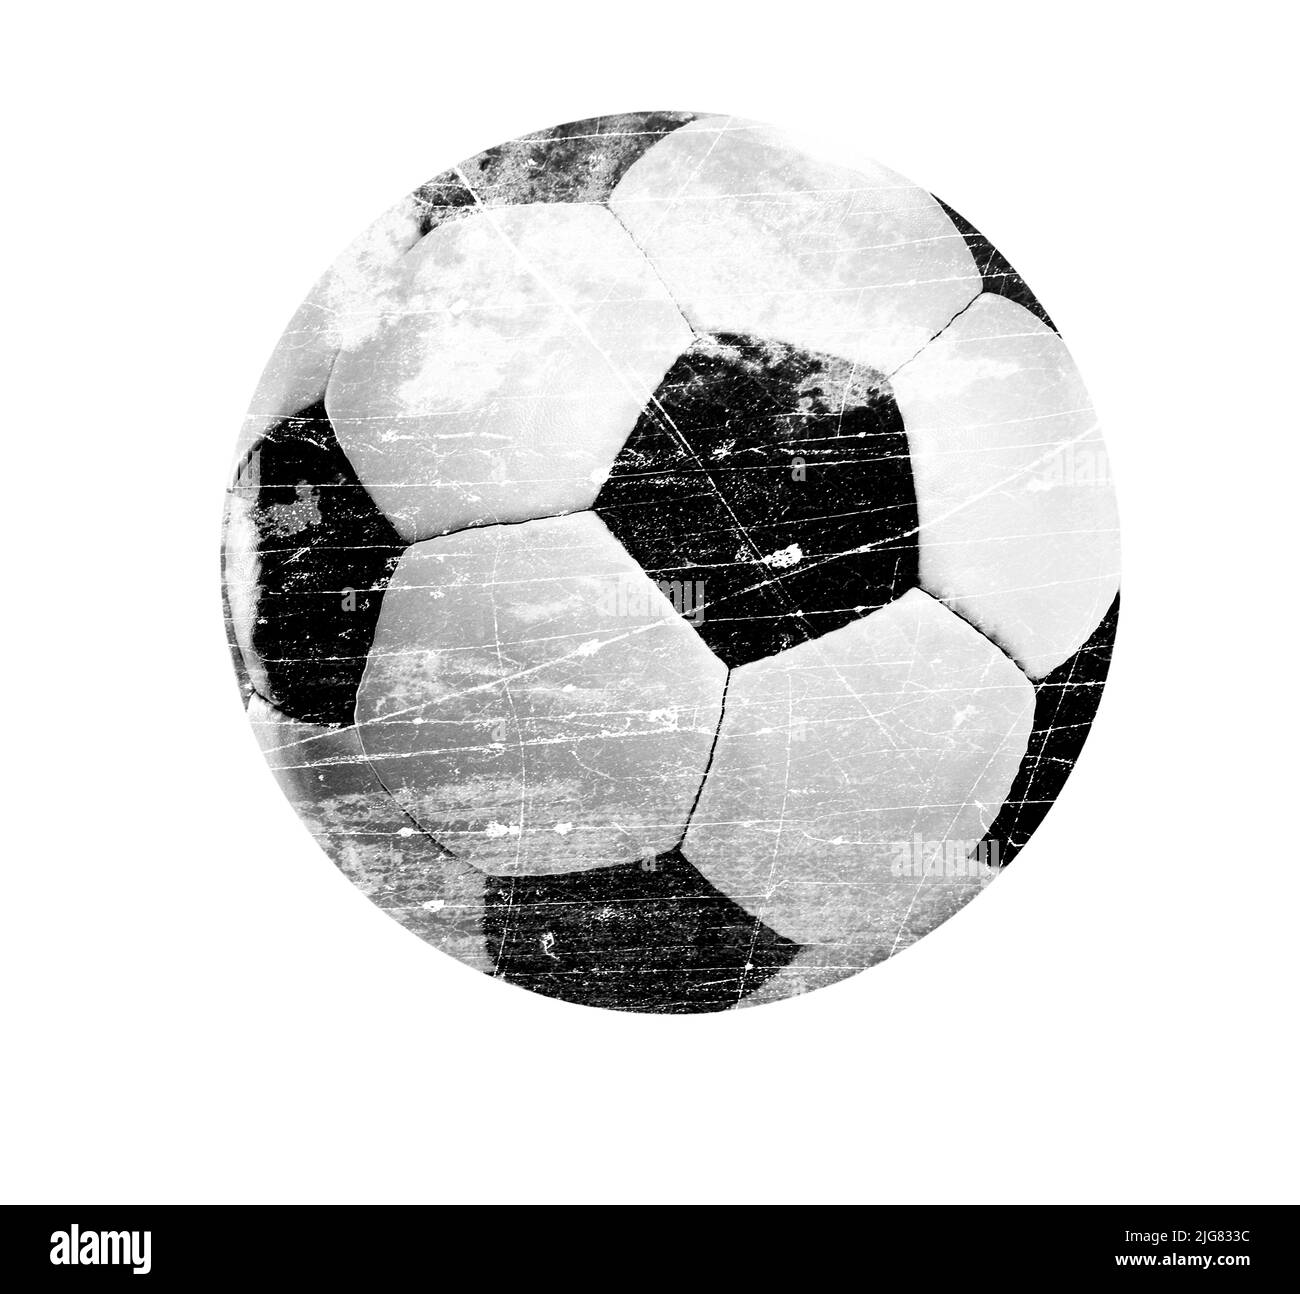 Soccer, 3d illustration Stock Photo